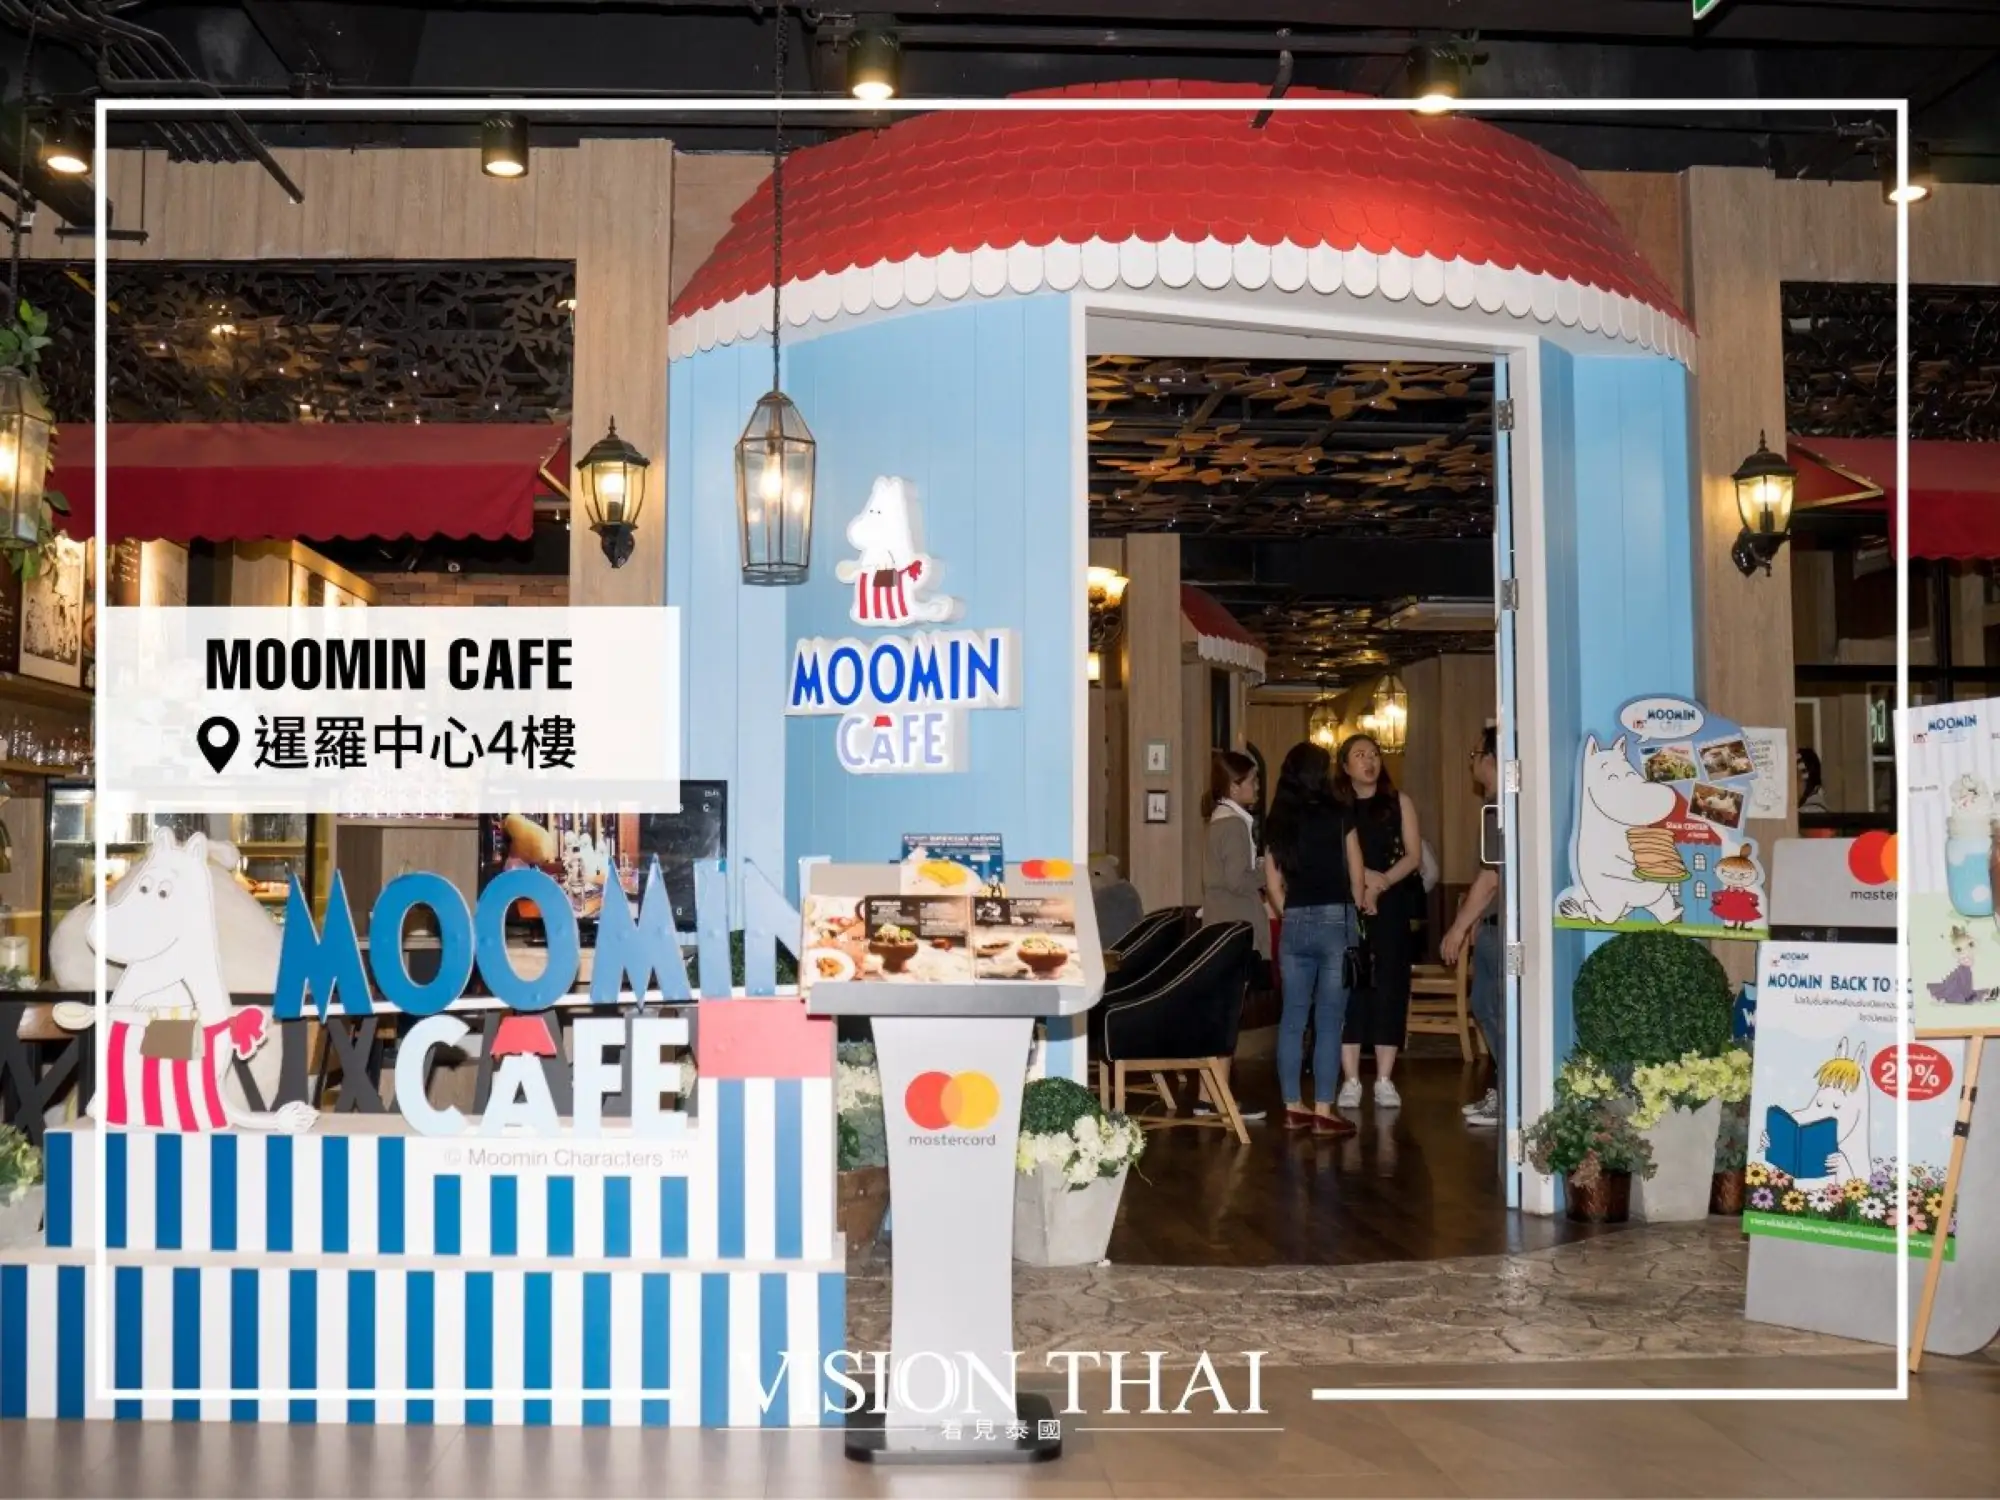 曼谷暹羅中心有超可愛的Moomin Cafe